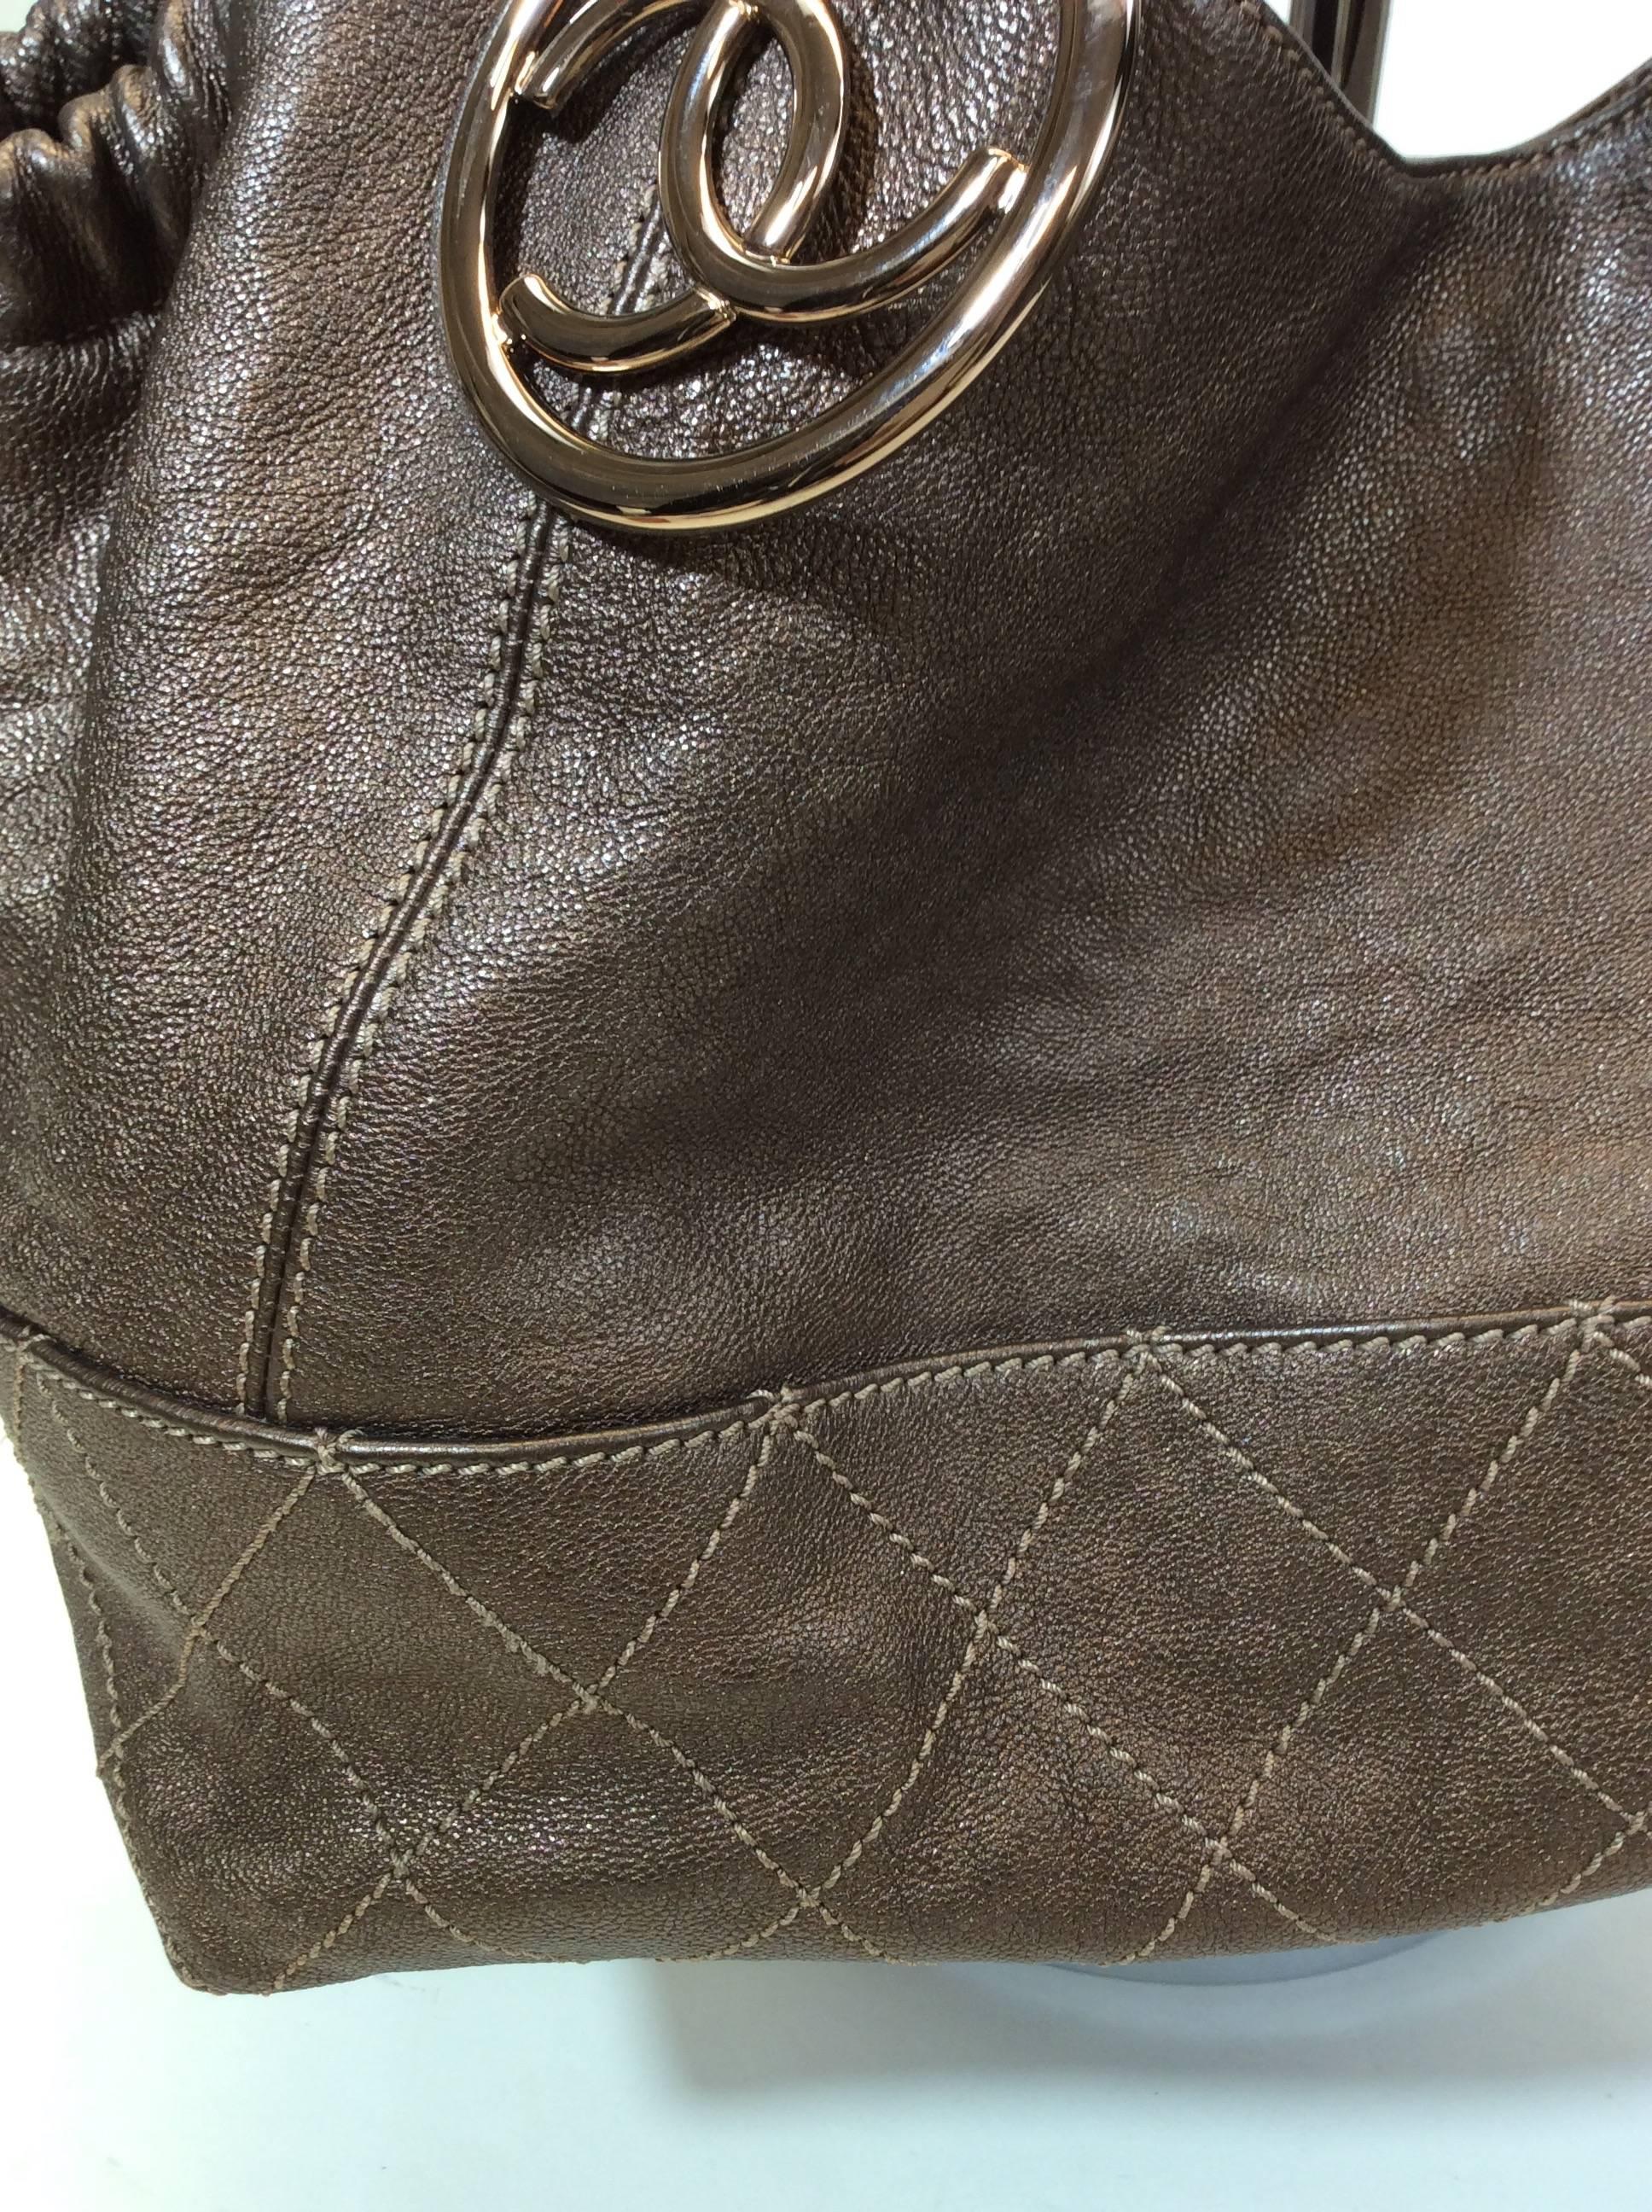 Chanel Large Copper Leather Shoulder Bag 1